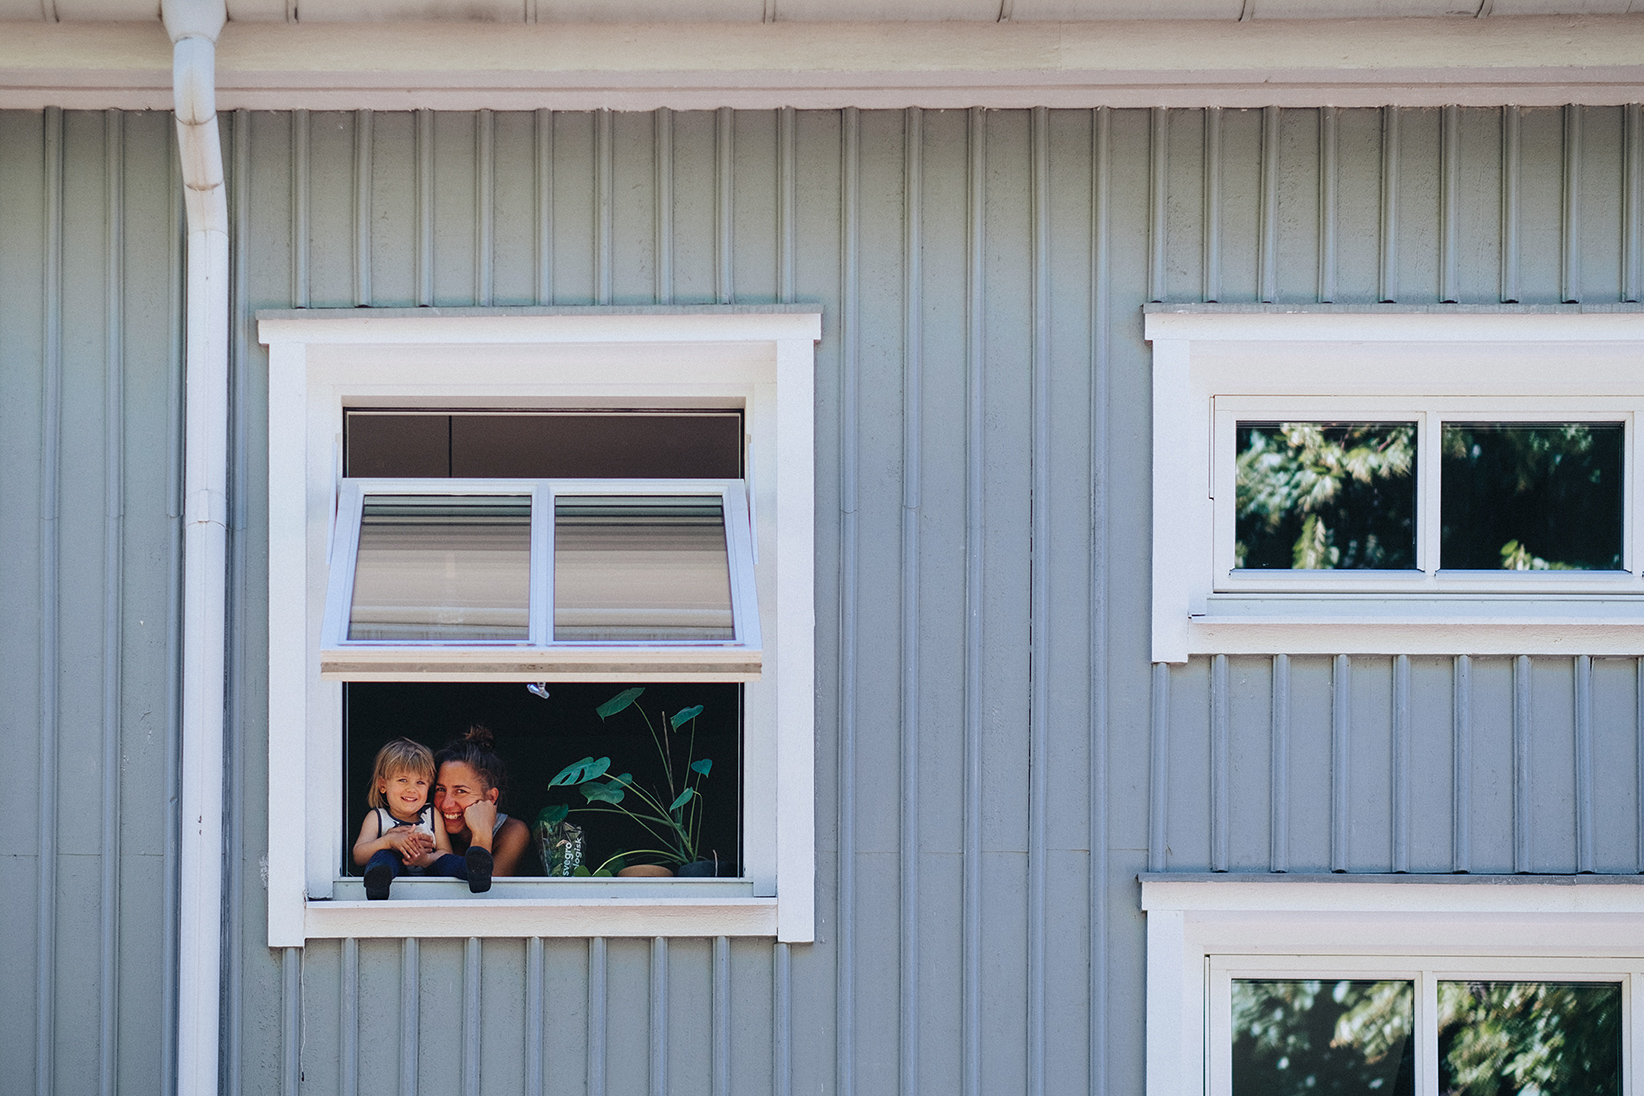 En närbild på en ljusblå husfasad med vita fönster. I ett öppet fönster kikar en mamma och hennes dotter fram.